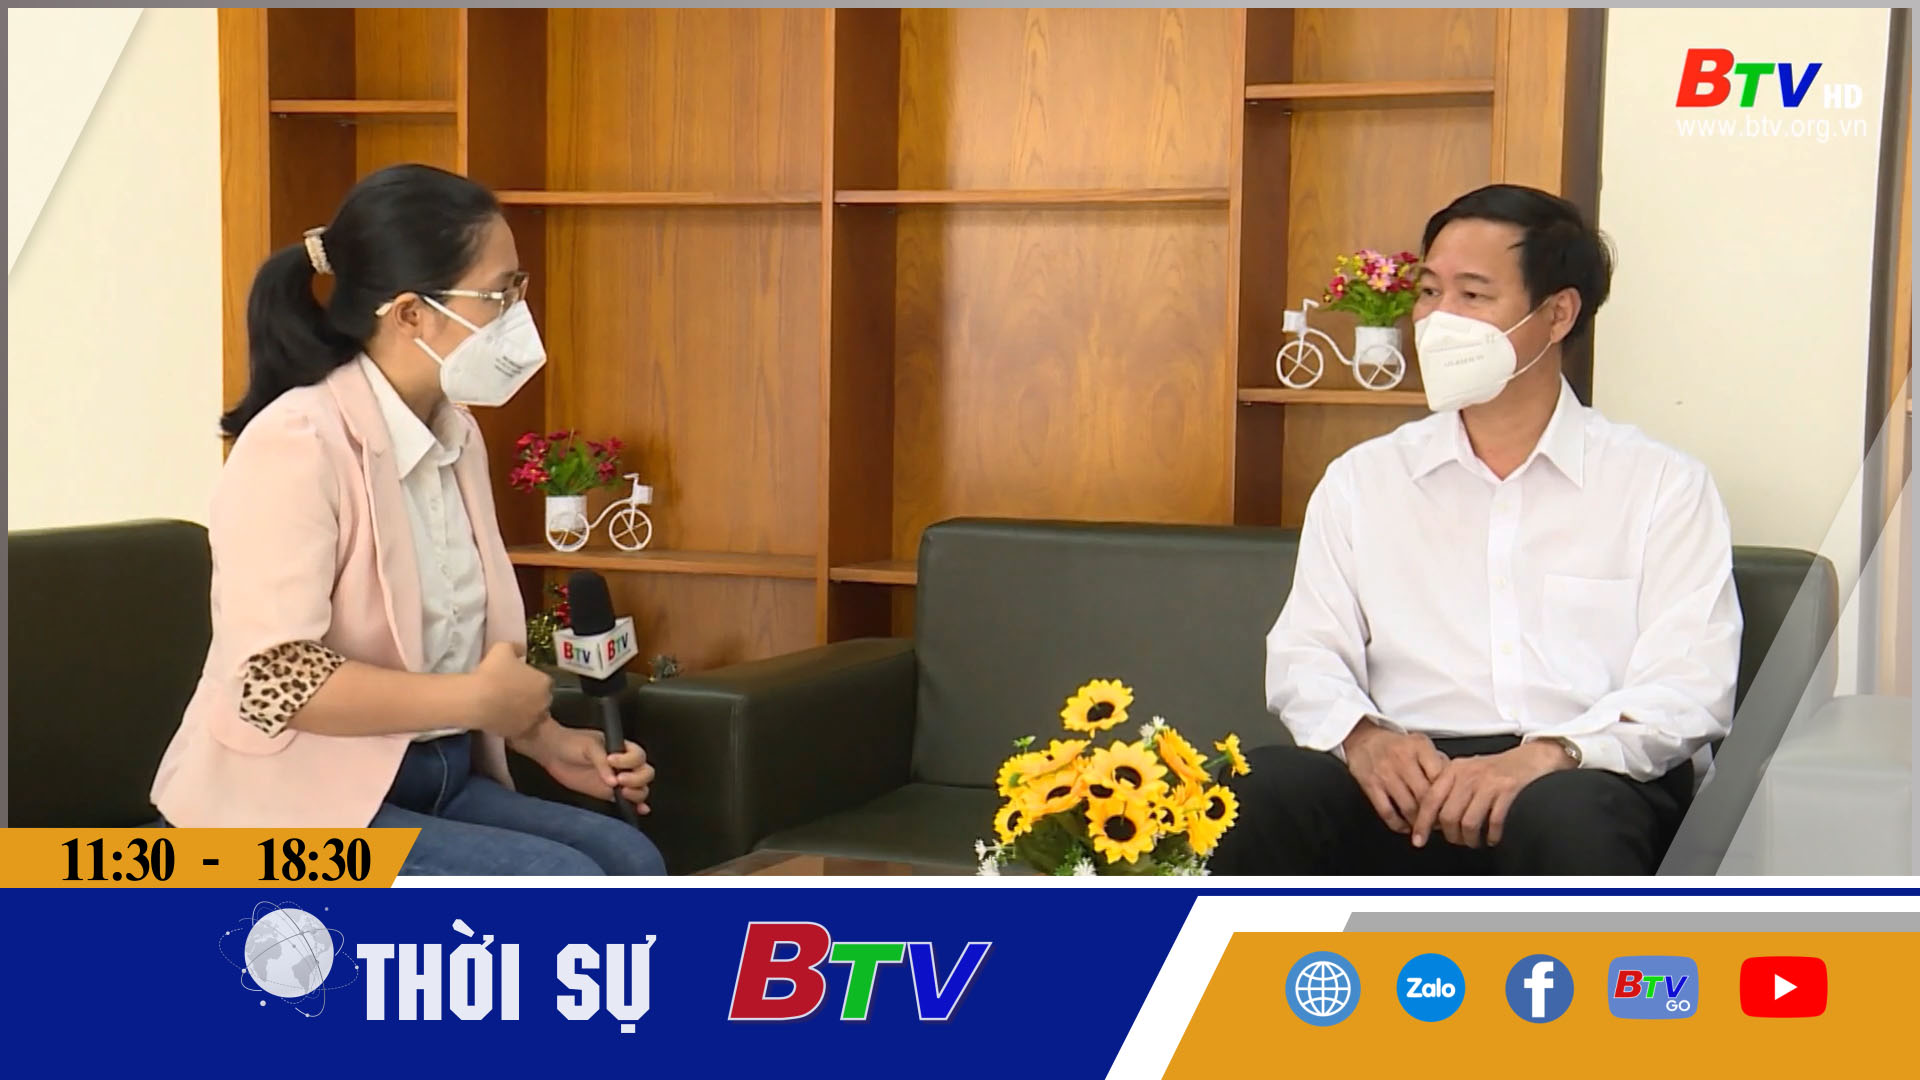 Phỏng vấn Tiến sĩ - Bác sĩ Nguyễn Hồng Chương;  Giám đốc Sở Y tế tỉnh Bình Dương